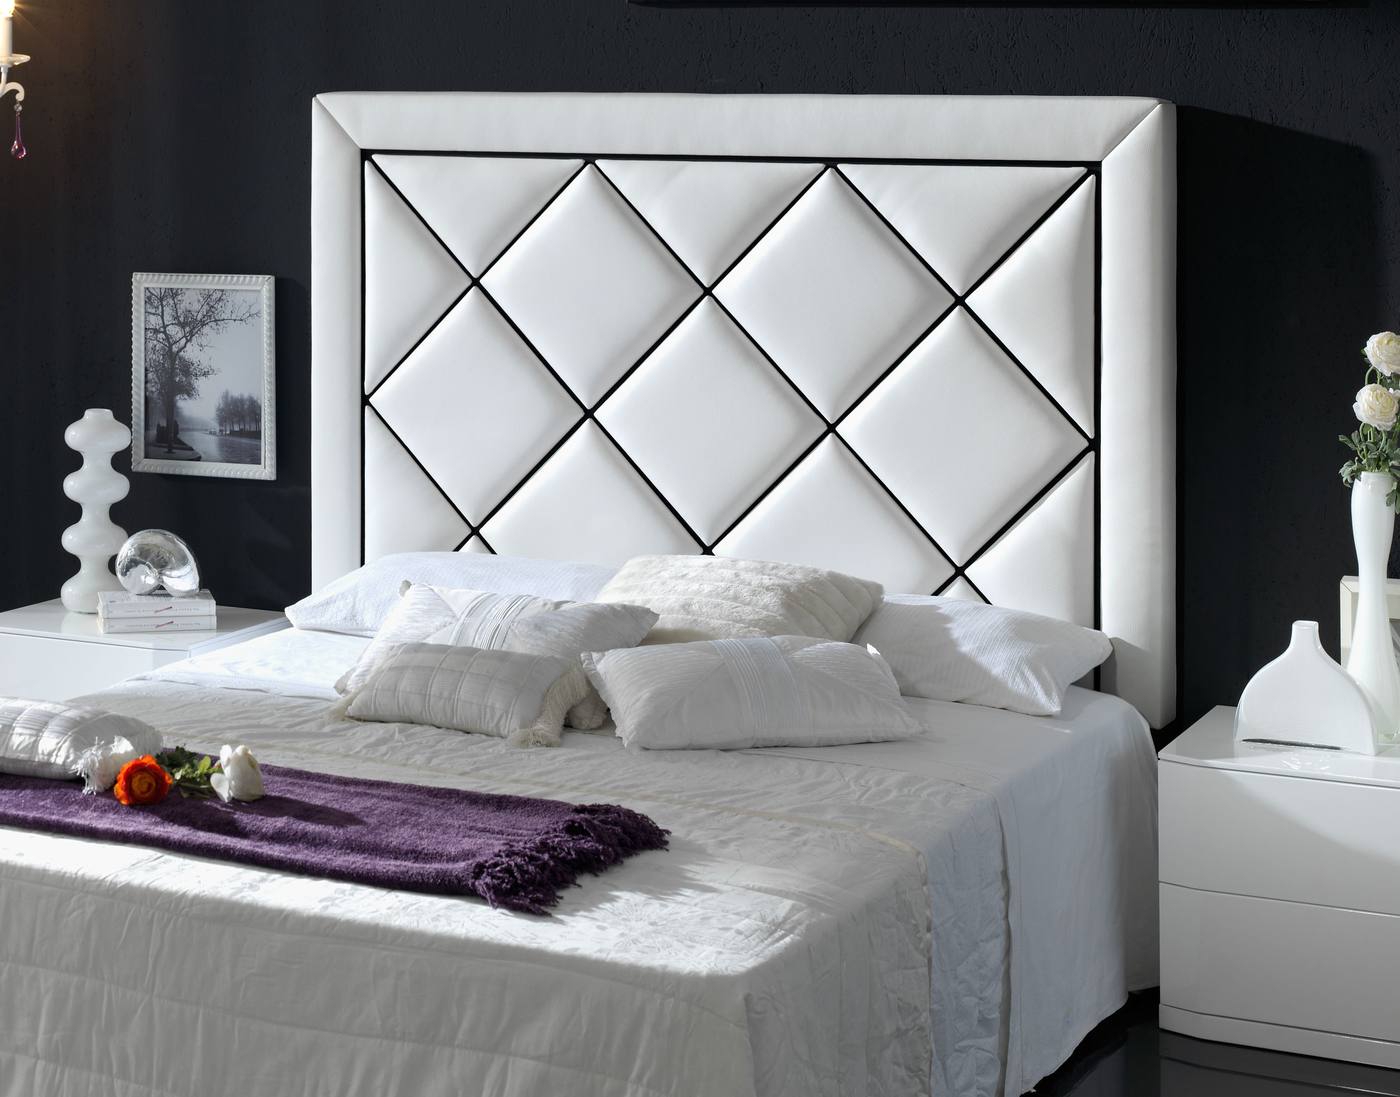 Cabecero tapizado en polipiel para cama de 150 cm, disponible en varios colores.